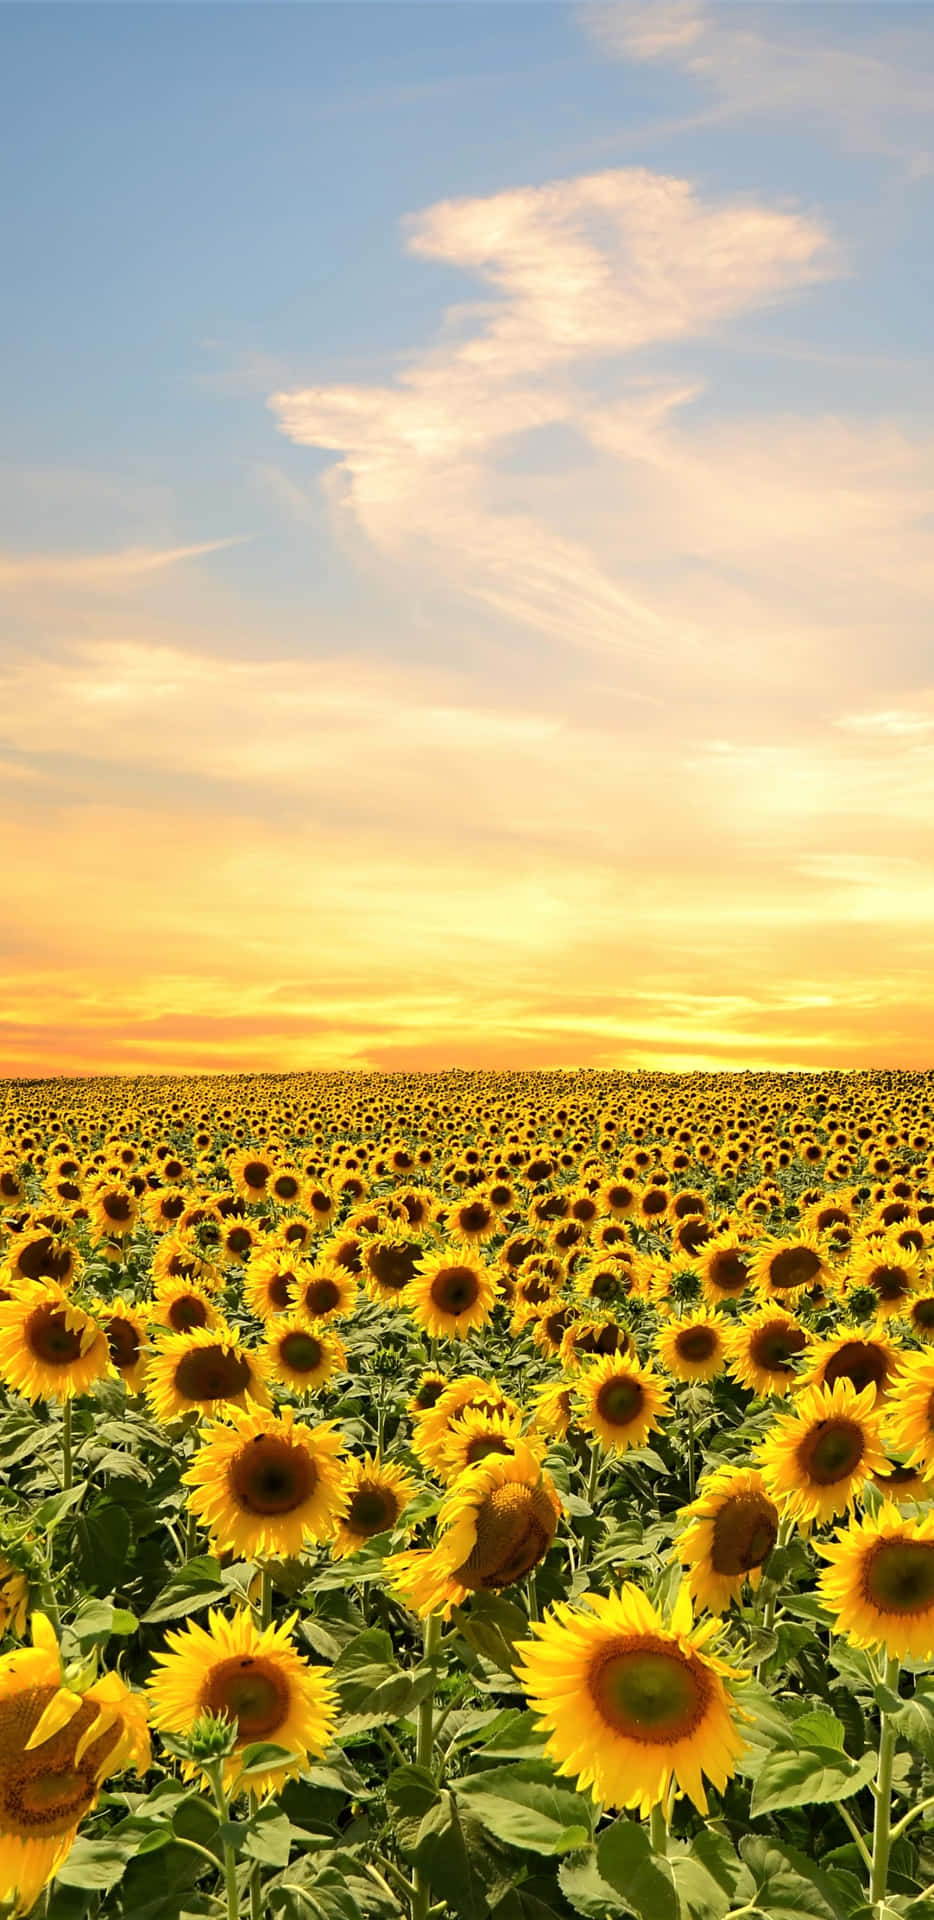 Bleibensie Verbunden Mit Dem Sonnenblumen-handy. Wallpaper